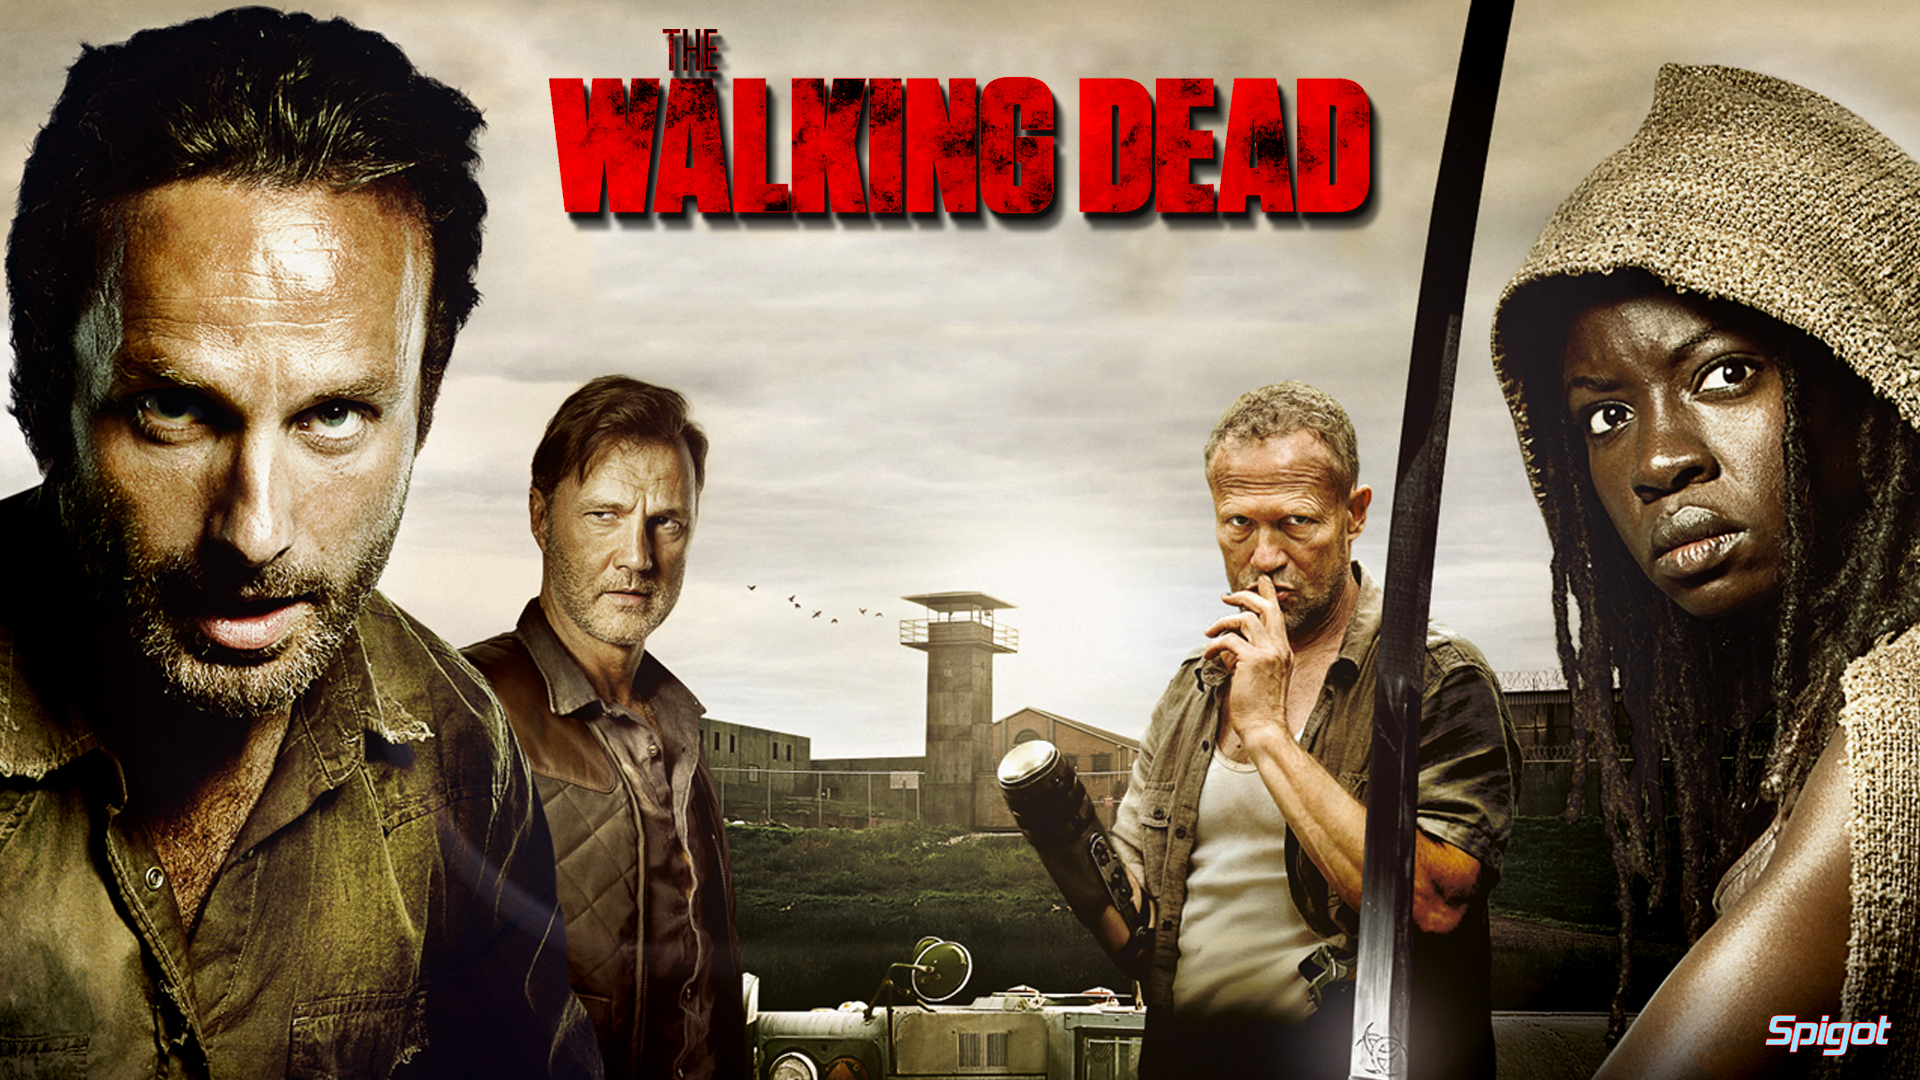 The Walking Dead Wallpaper HD 1080pjpg 1920x1080